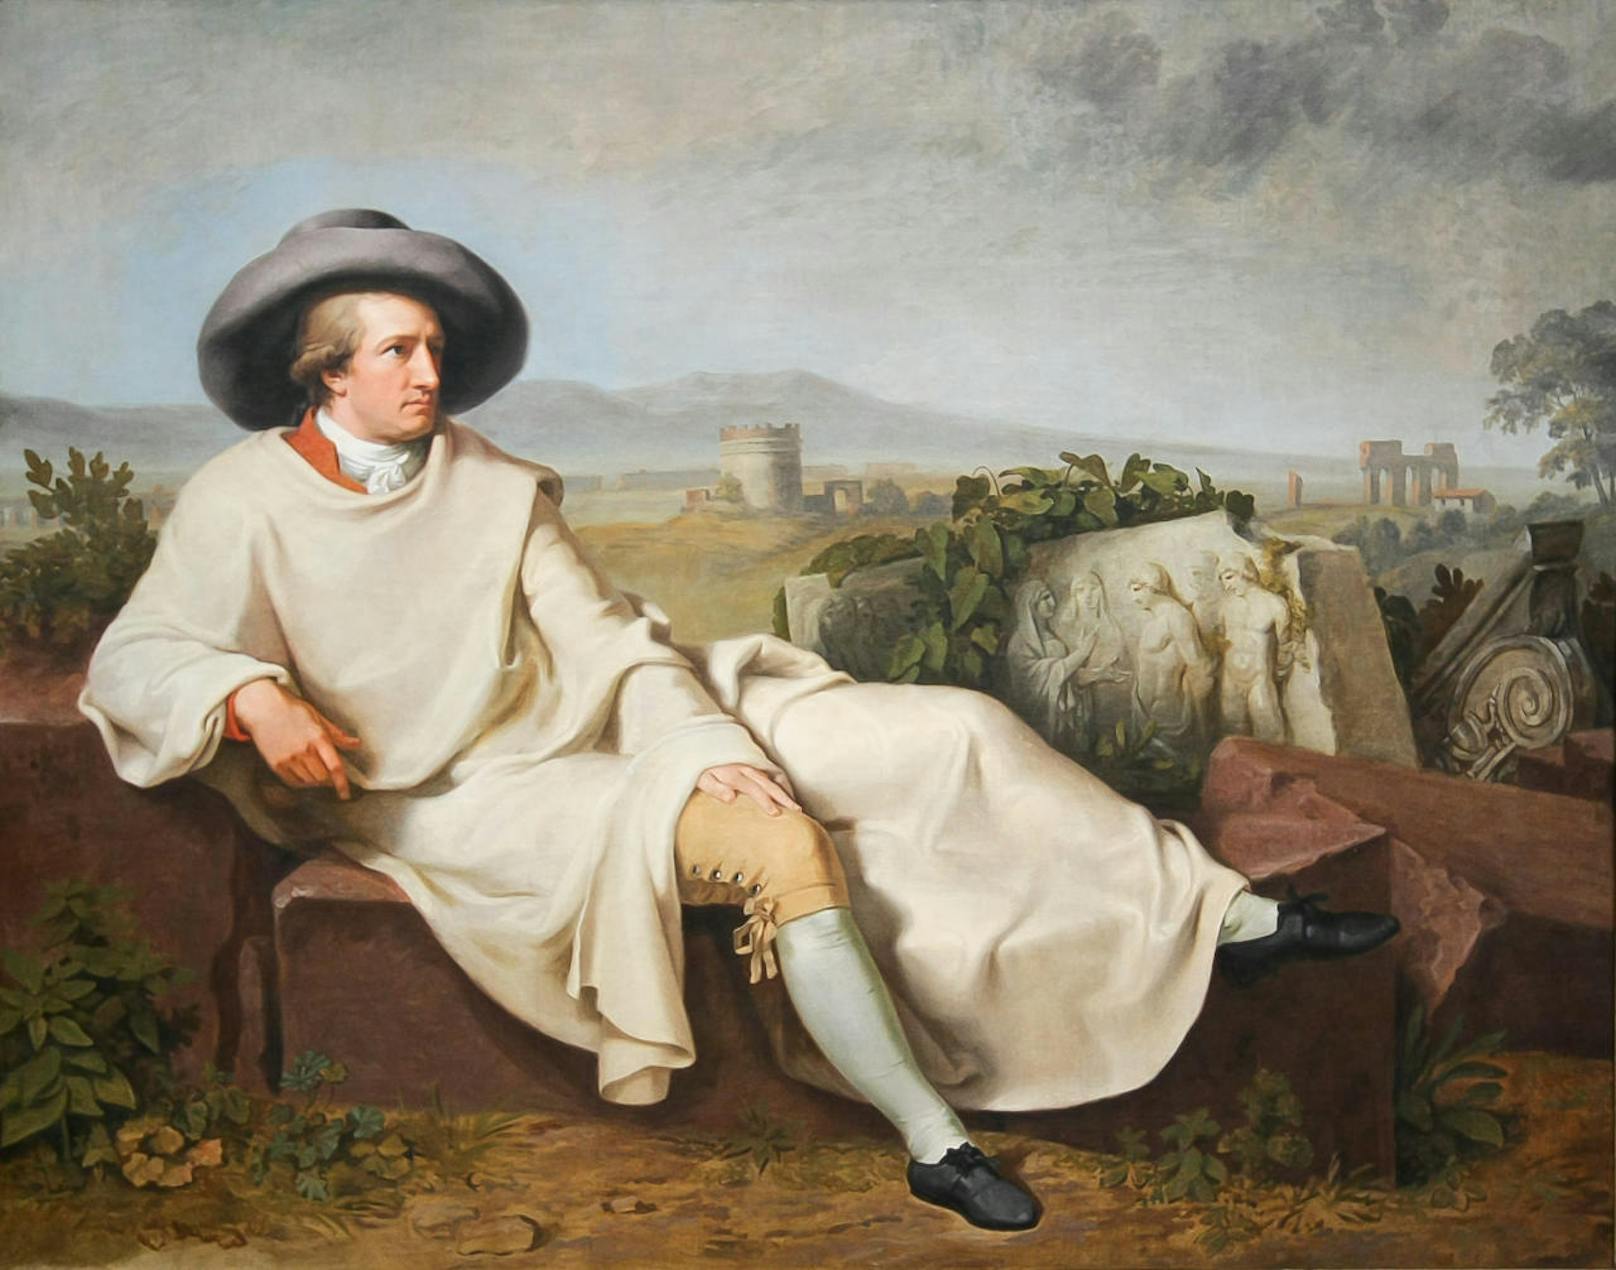 <b>Johann Wolfgang von Goethe (1749-1832)</b>

"Mehr Licht!"

Umso größer die Persönlichkeit, desto bedeutender müssen auch seine letzten Worte sein. Goethe selbst hat gemeint: "Am Ende des Lebens gehen dem gefassten Geiste Gedanken auf, bisher undenkbare; sie sind wie selige Dämonen, die sich auf den Gipfeln der Vergangenheit glänzend niederlassen." Dann dürfte es der Dichterfürst selbst ja mit "Mehr Licht!" perfekt getroffen haben als er sich so aus dem Leben verabschiedet hat.